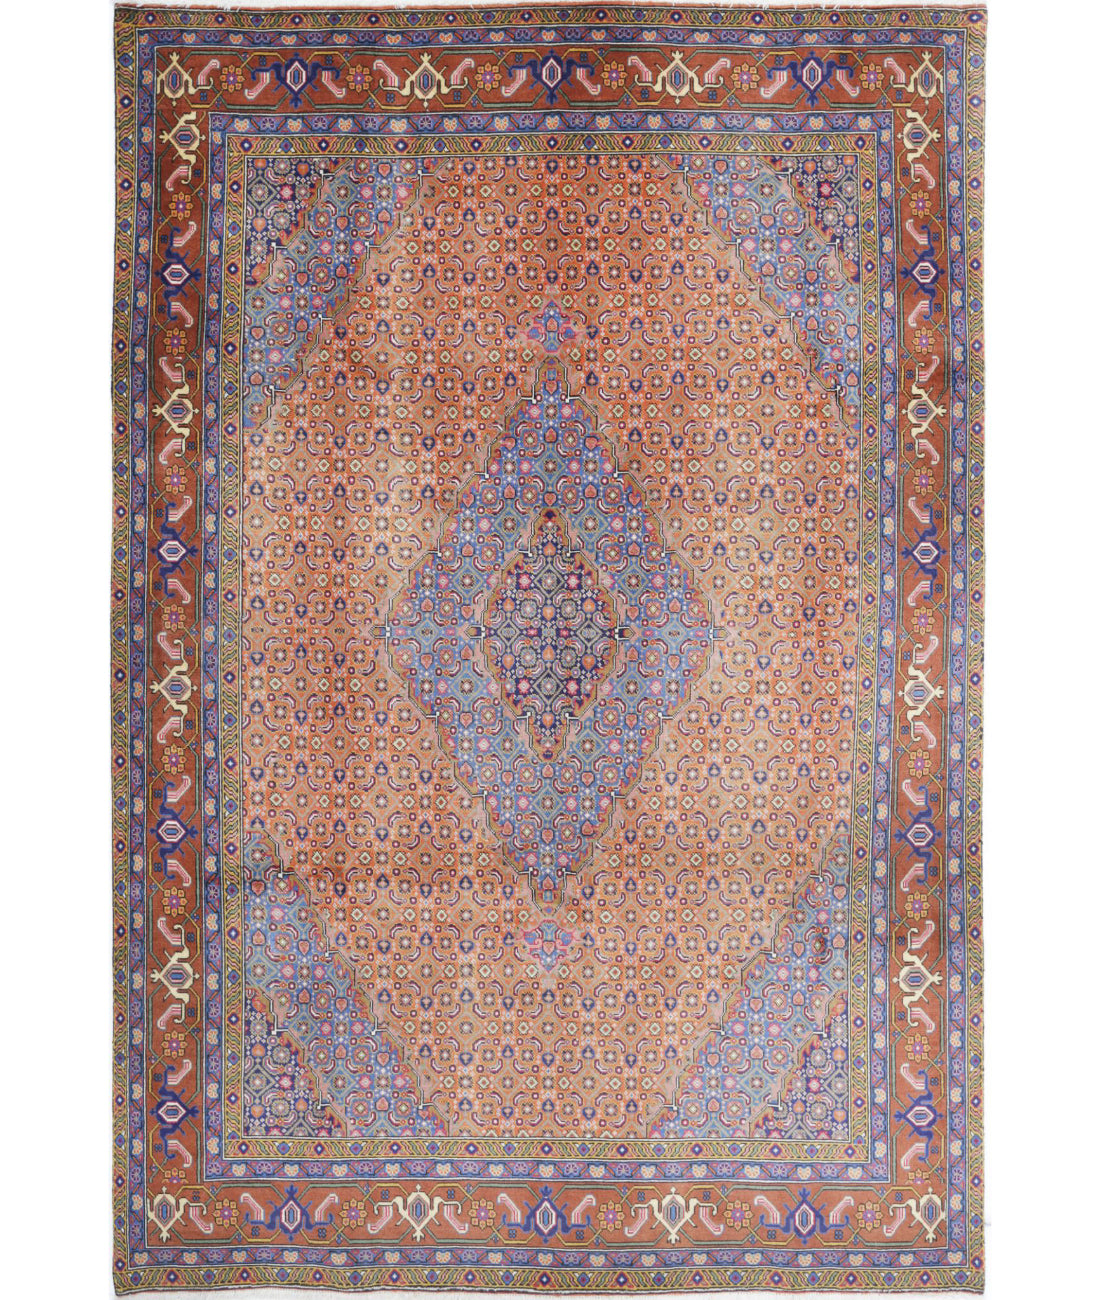 Hand Knotted Persian Bijar Wool Rug - 6'8'' x 9'9'' 6'8'' x 9'9'' (200 X 293) / Rust / Brown